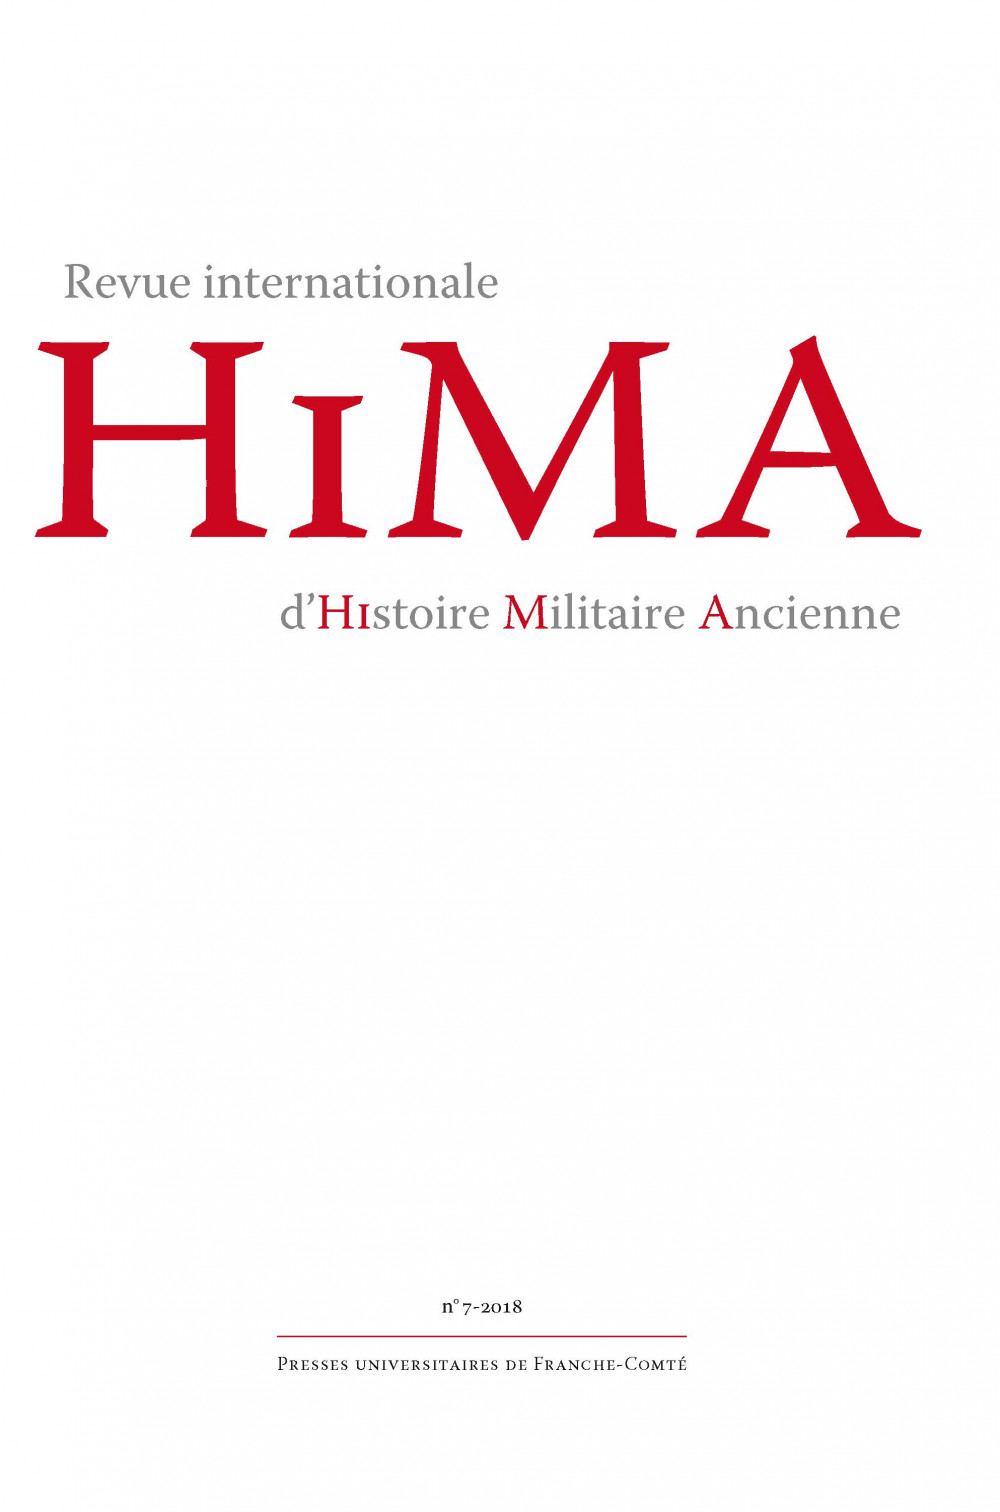 Revue internationale d’Histoire Militaire Ancienne – HiMA 7, 2018